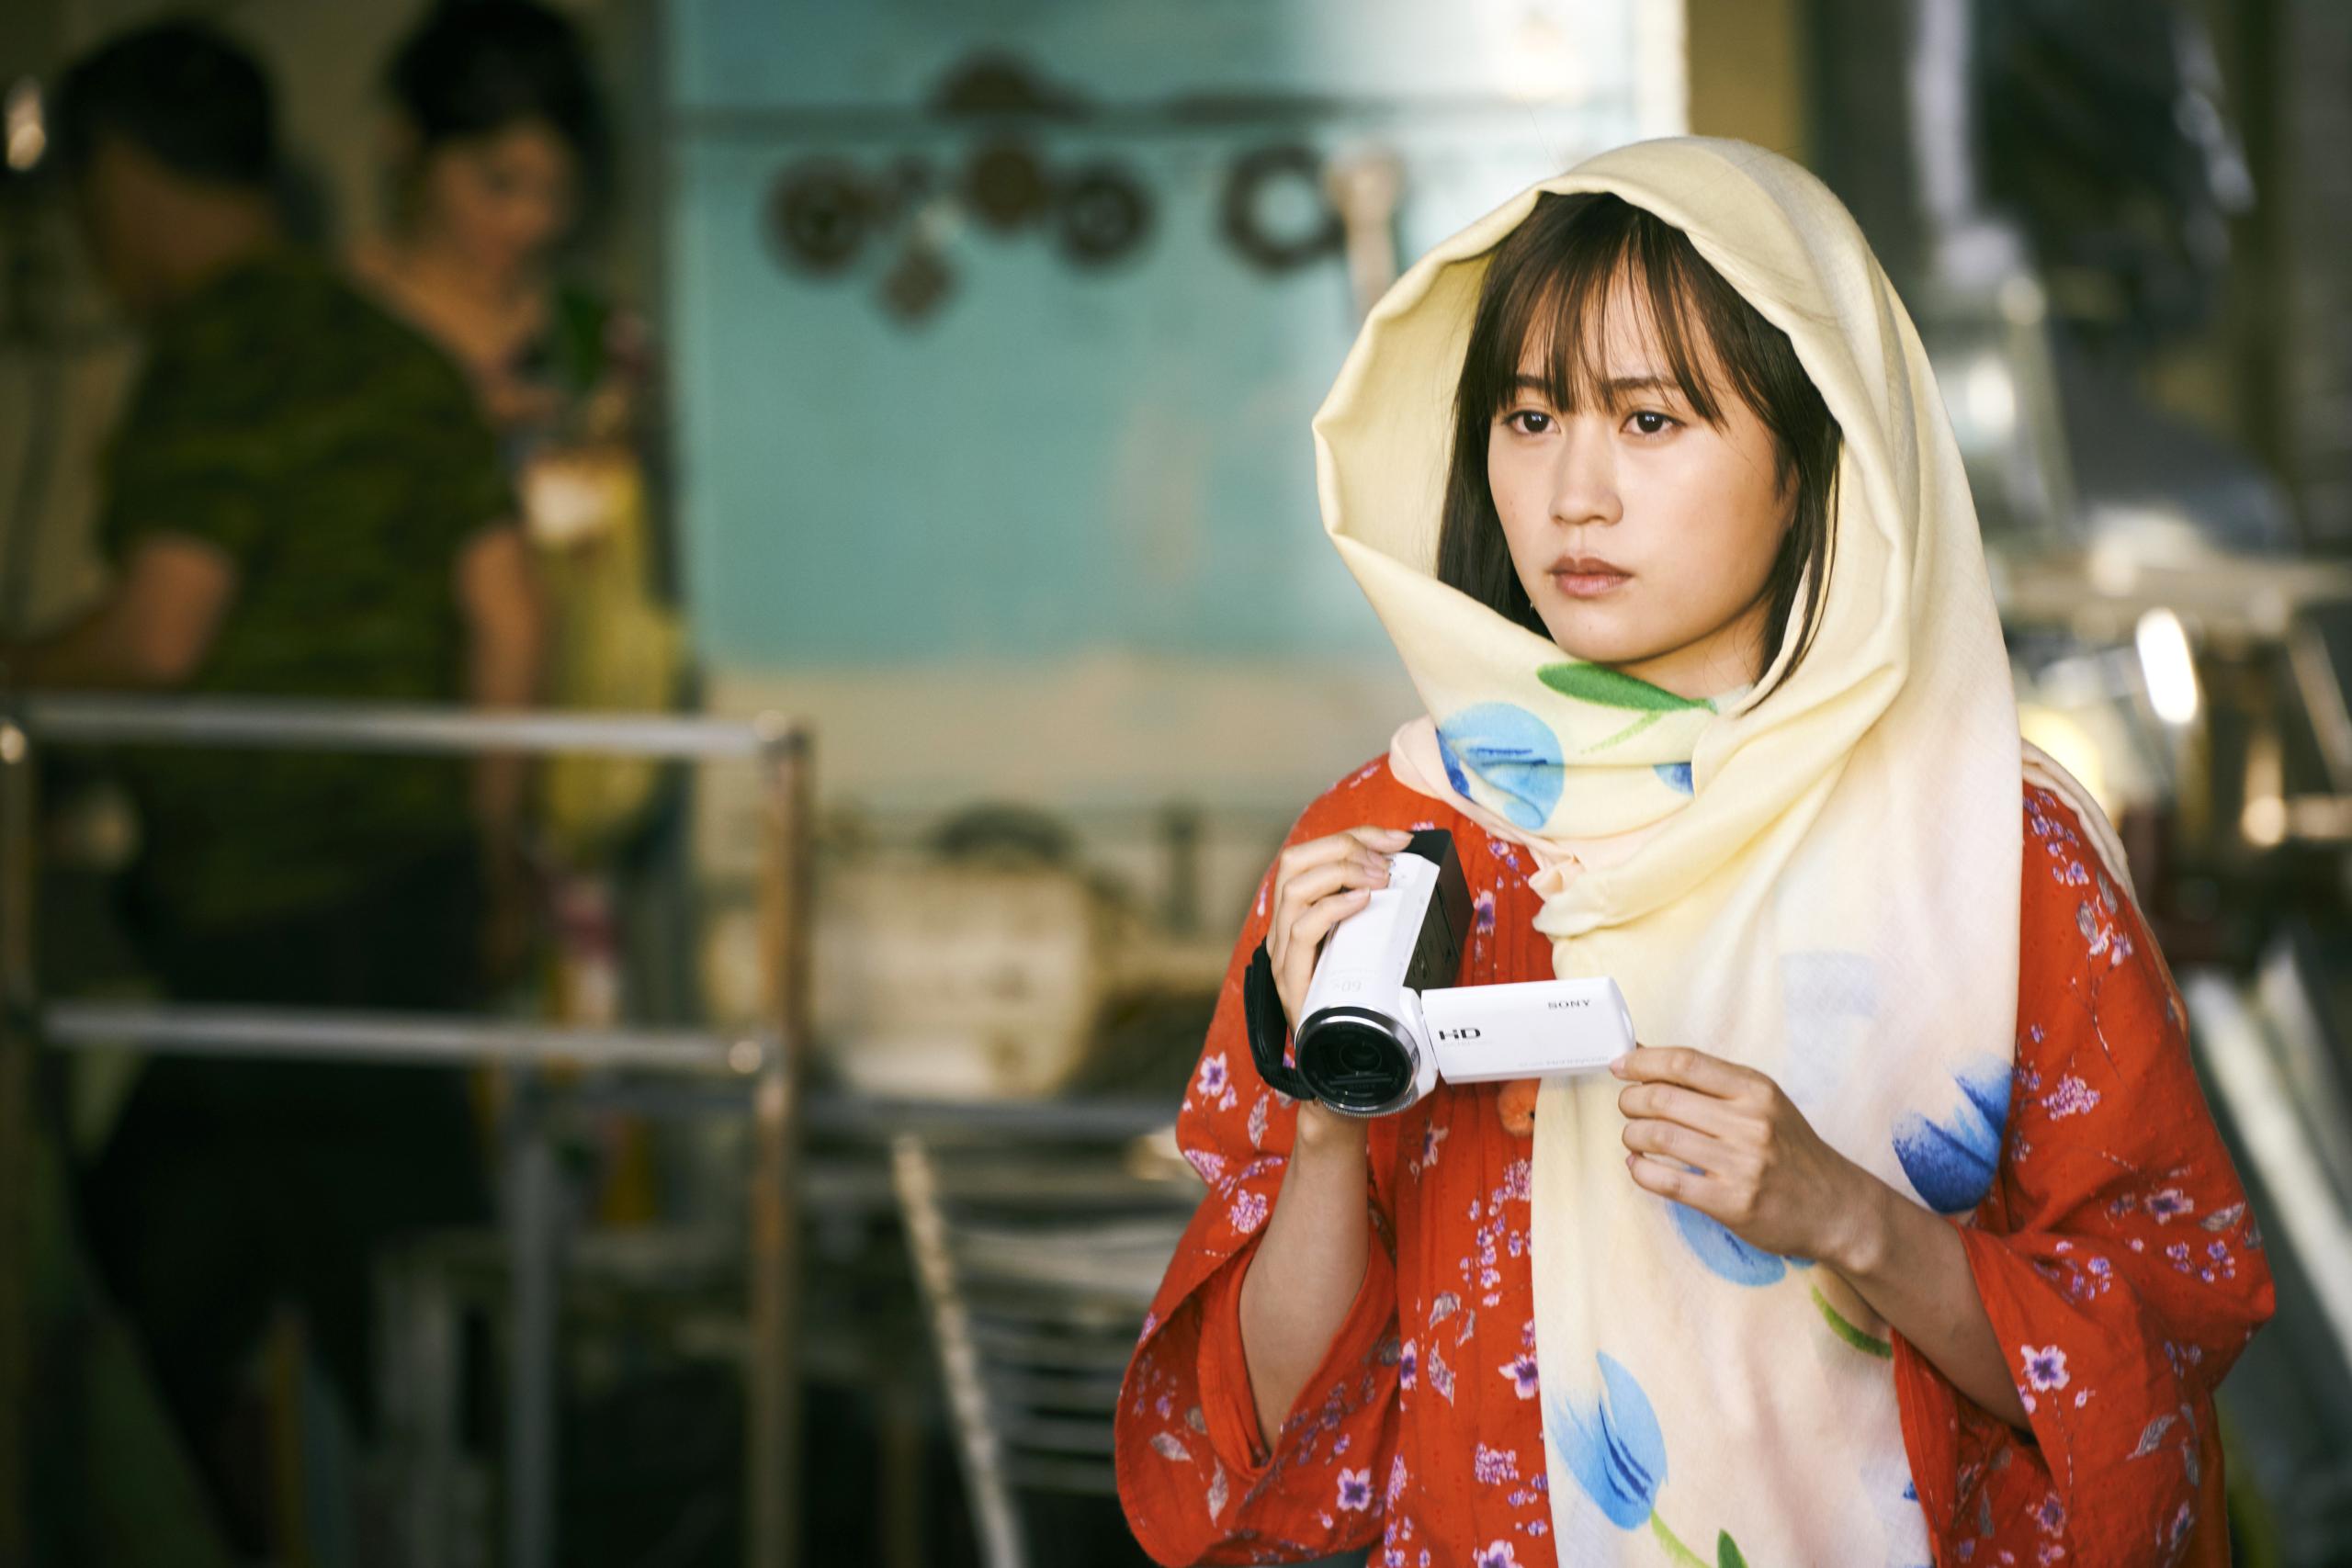 Szene auf einem Markt, eine Frau mit einem Schal um den Kopf und einer Handkamera schaut verträumt nach vorne